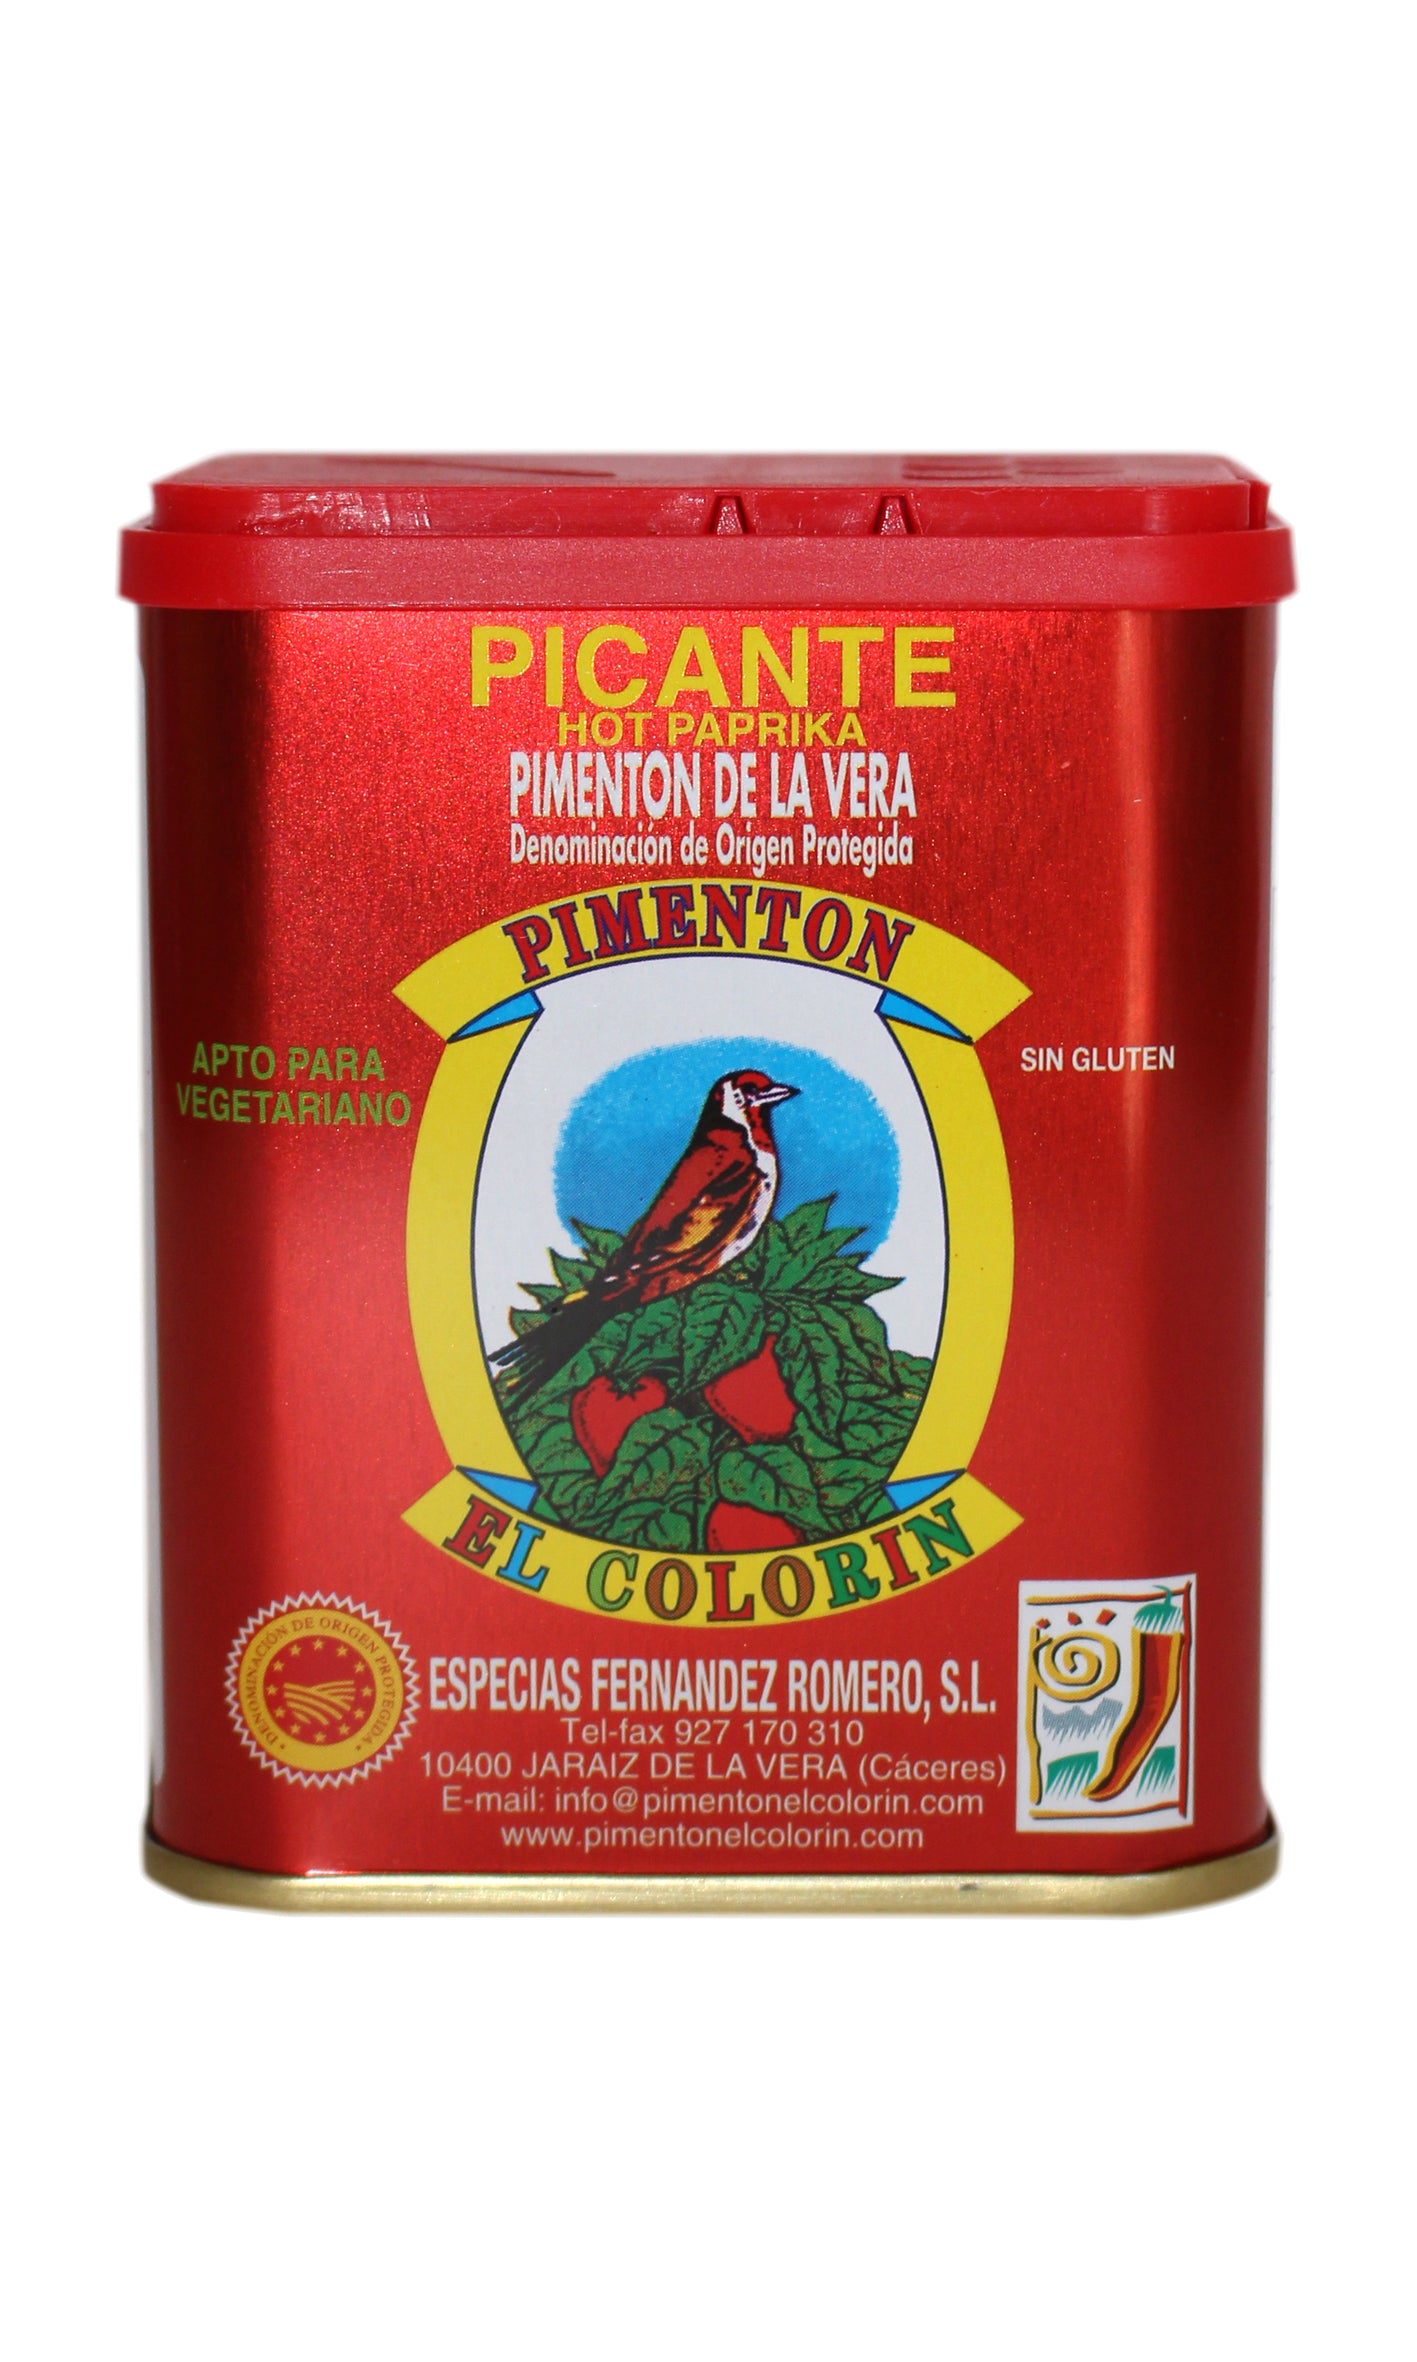 El Colorin: Smoked Hot Paprika De La Vera D.O.P. - 125g